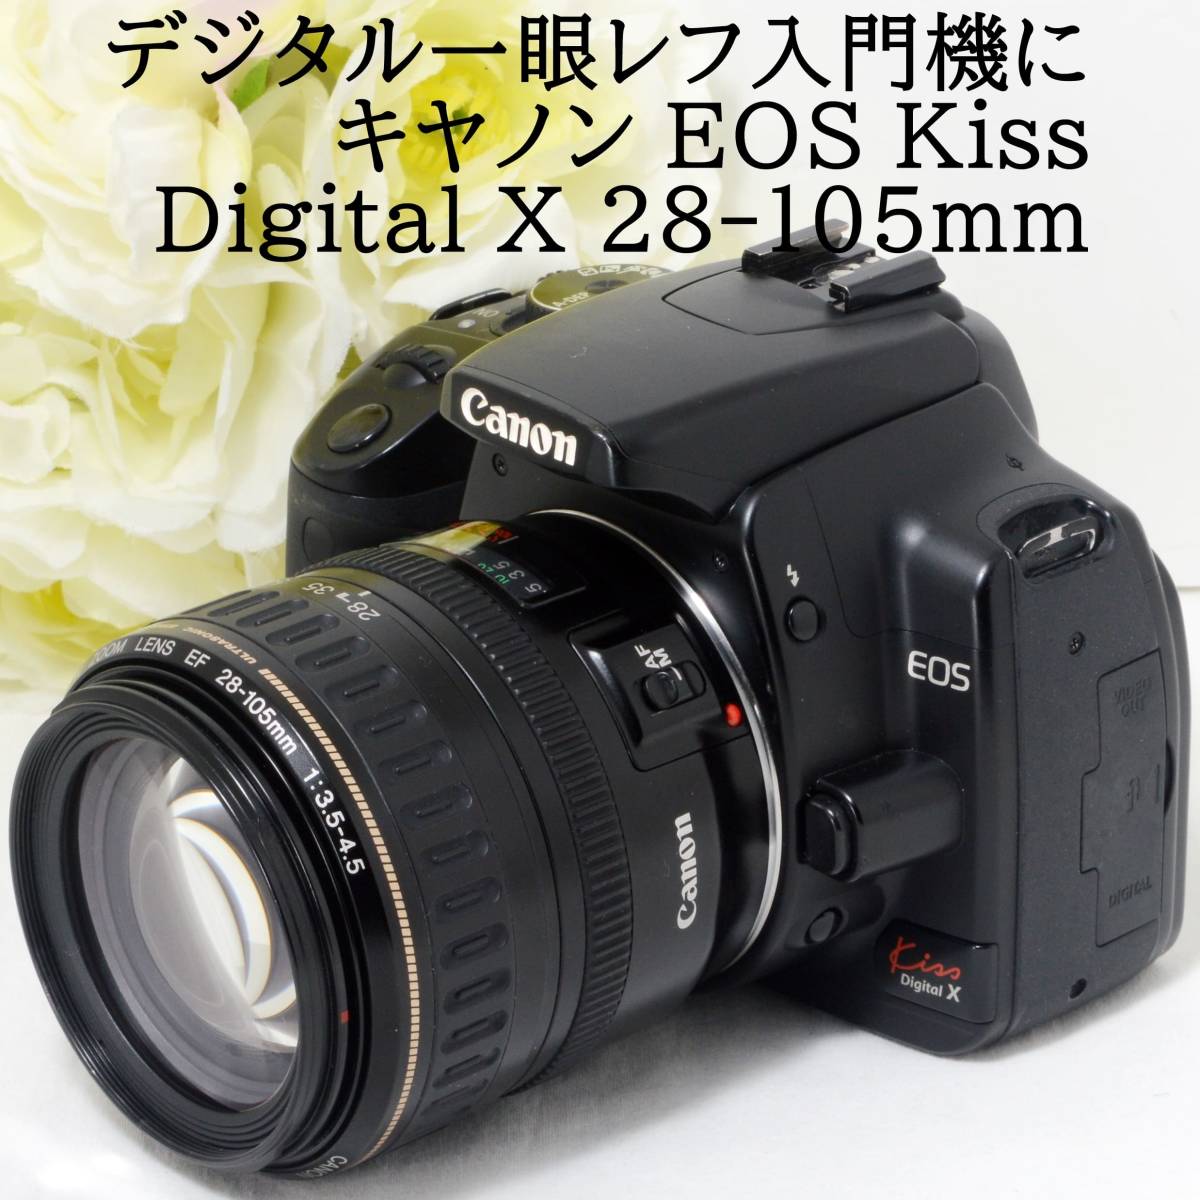 デジタル一眼レフカメラ入門機に Canon キャノン EOS Kiss Digital X